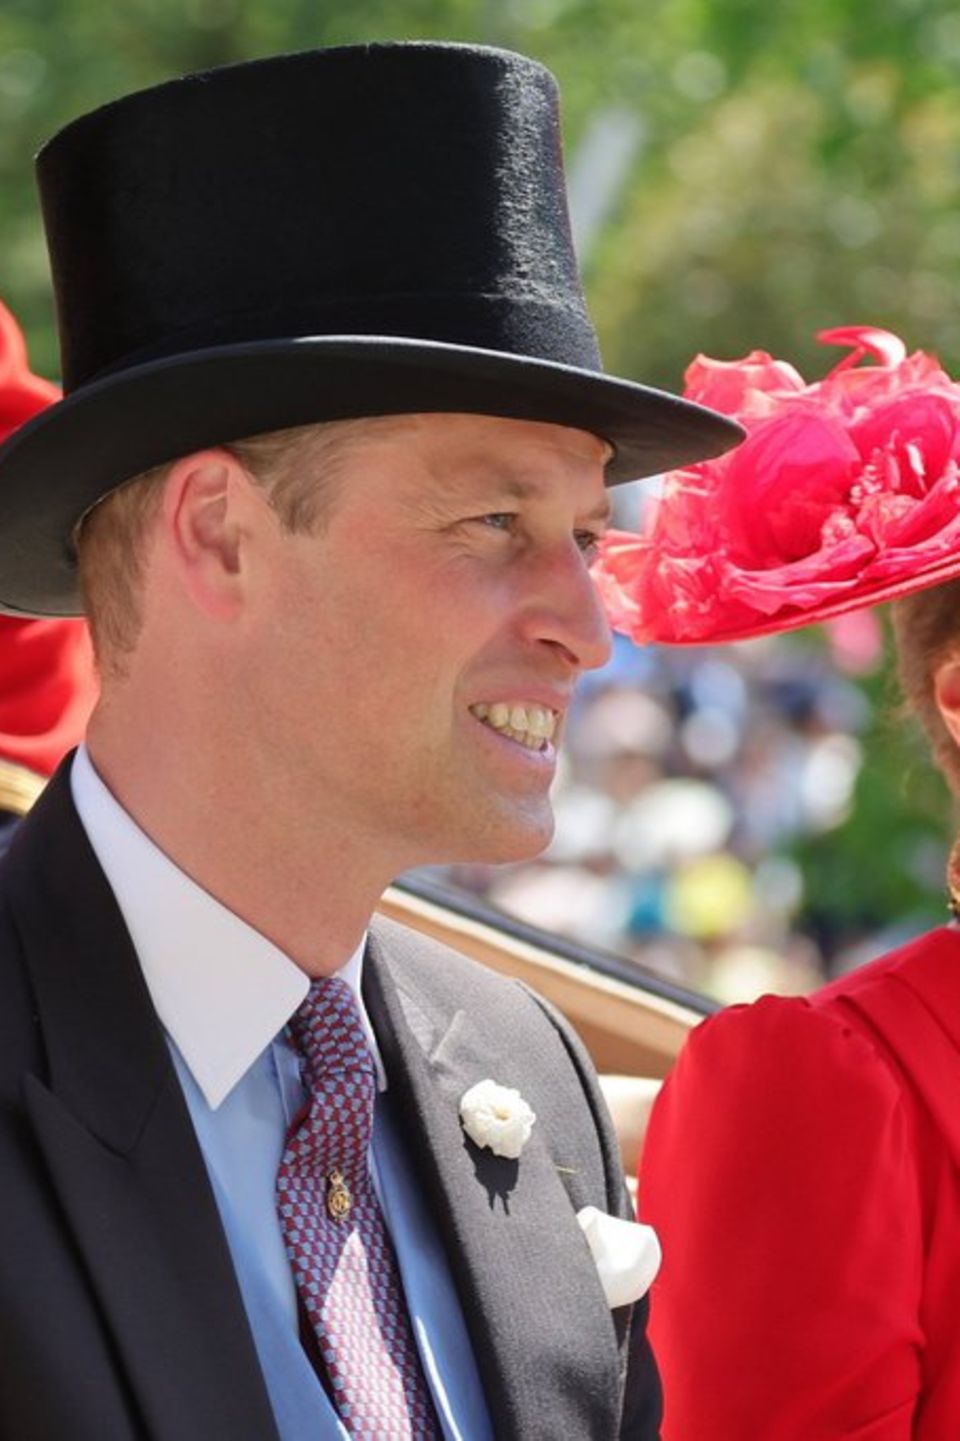 Prinz William und Prinzessin Kate nahmen unter Applaus und Jubel ihrer Fans am Royal Ascot teil.